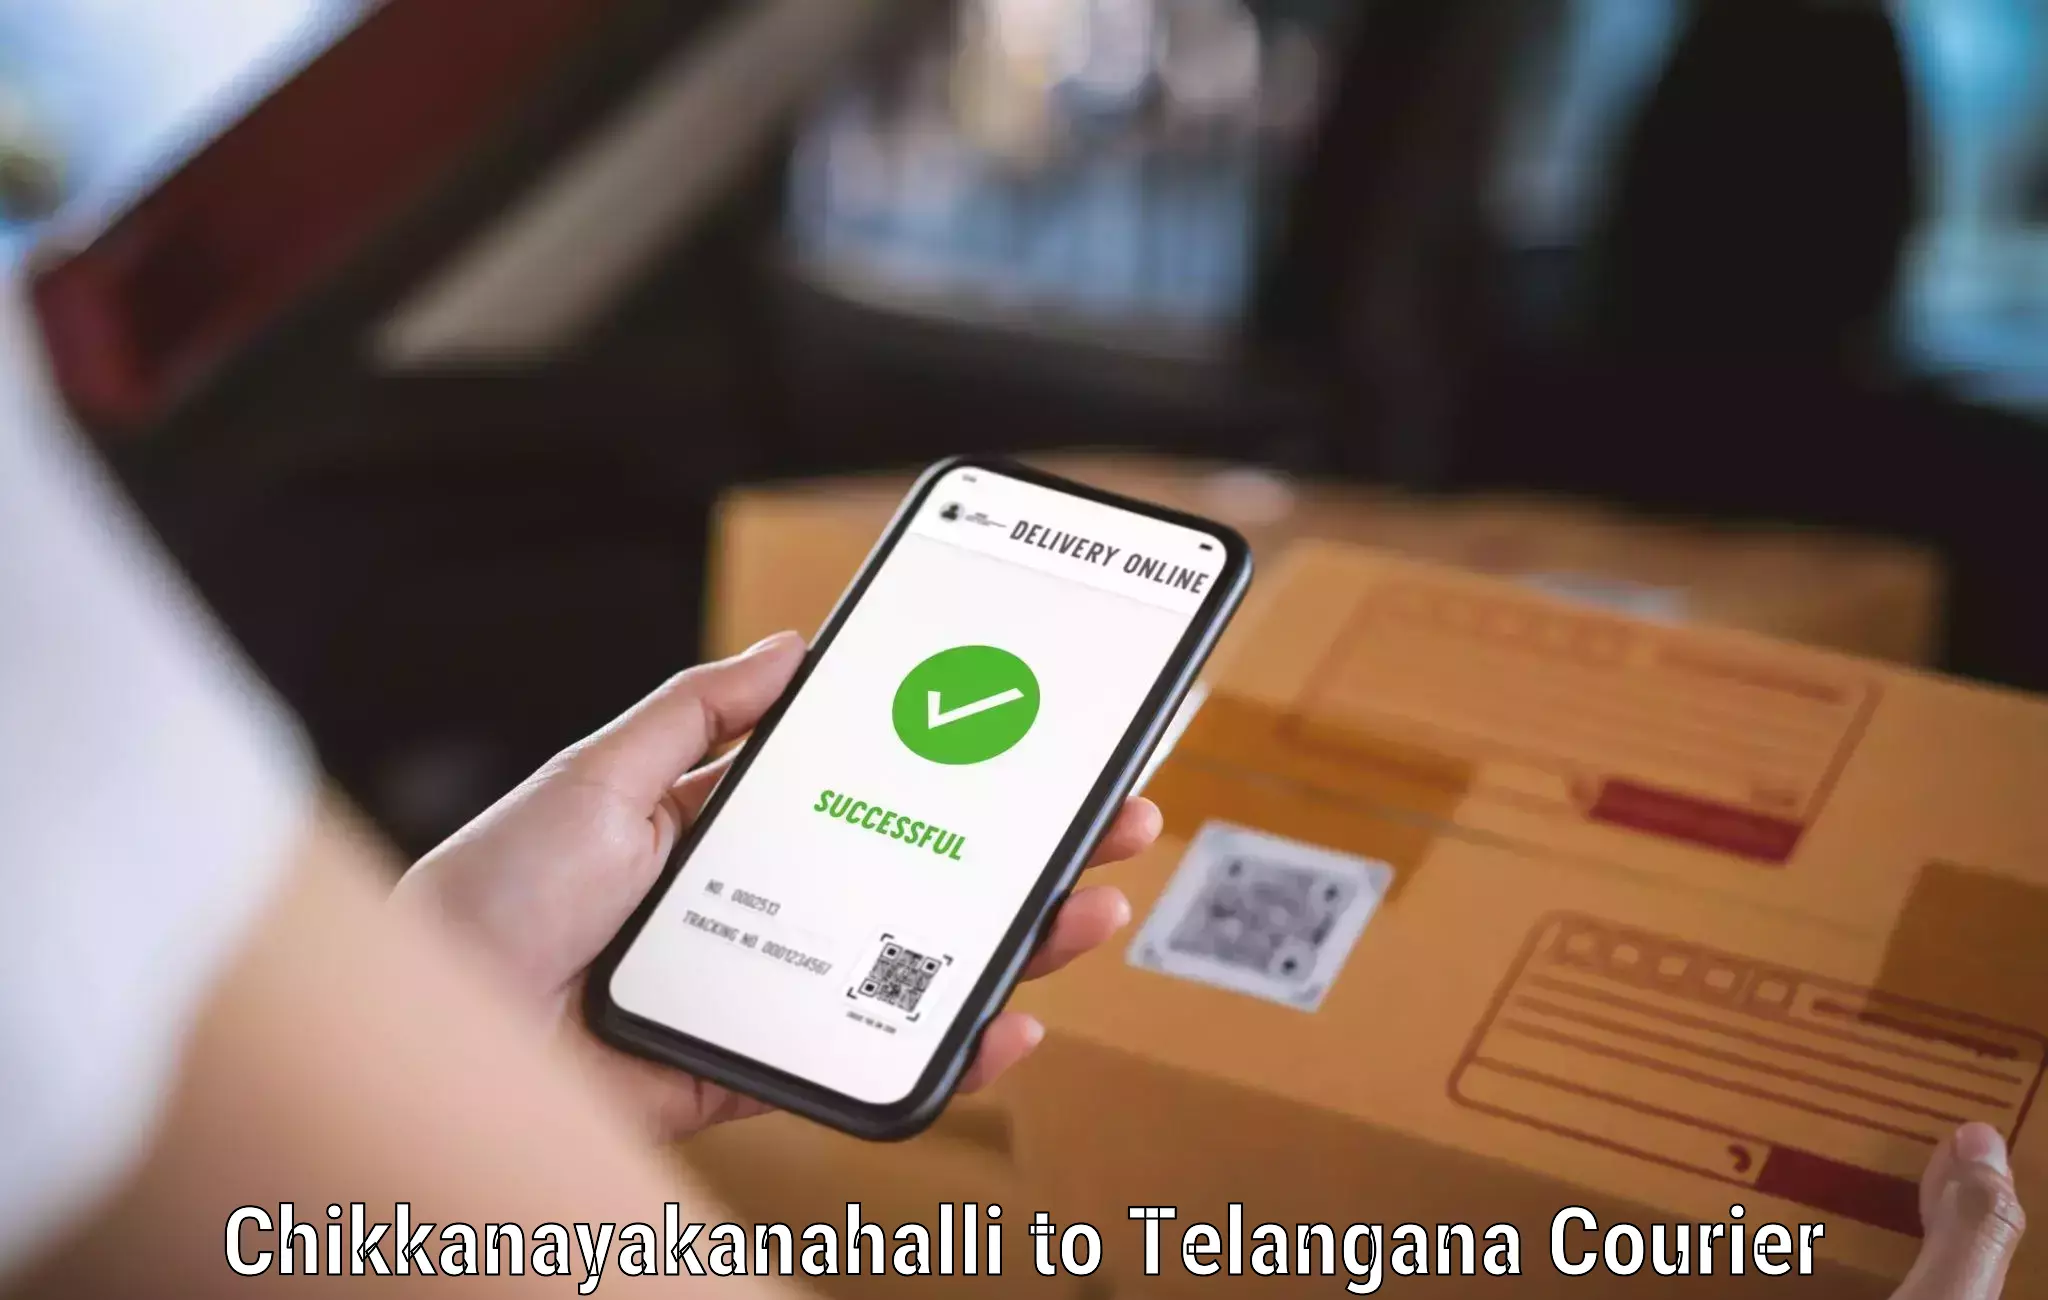 State-of-the-art courier technology in Chikkanayakanahalli to Shamshabad